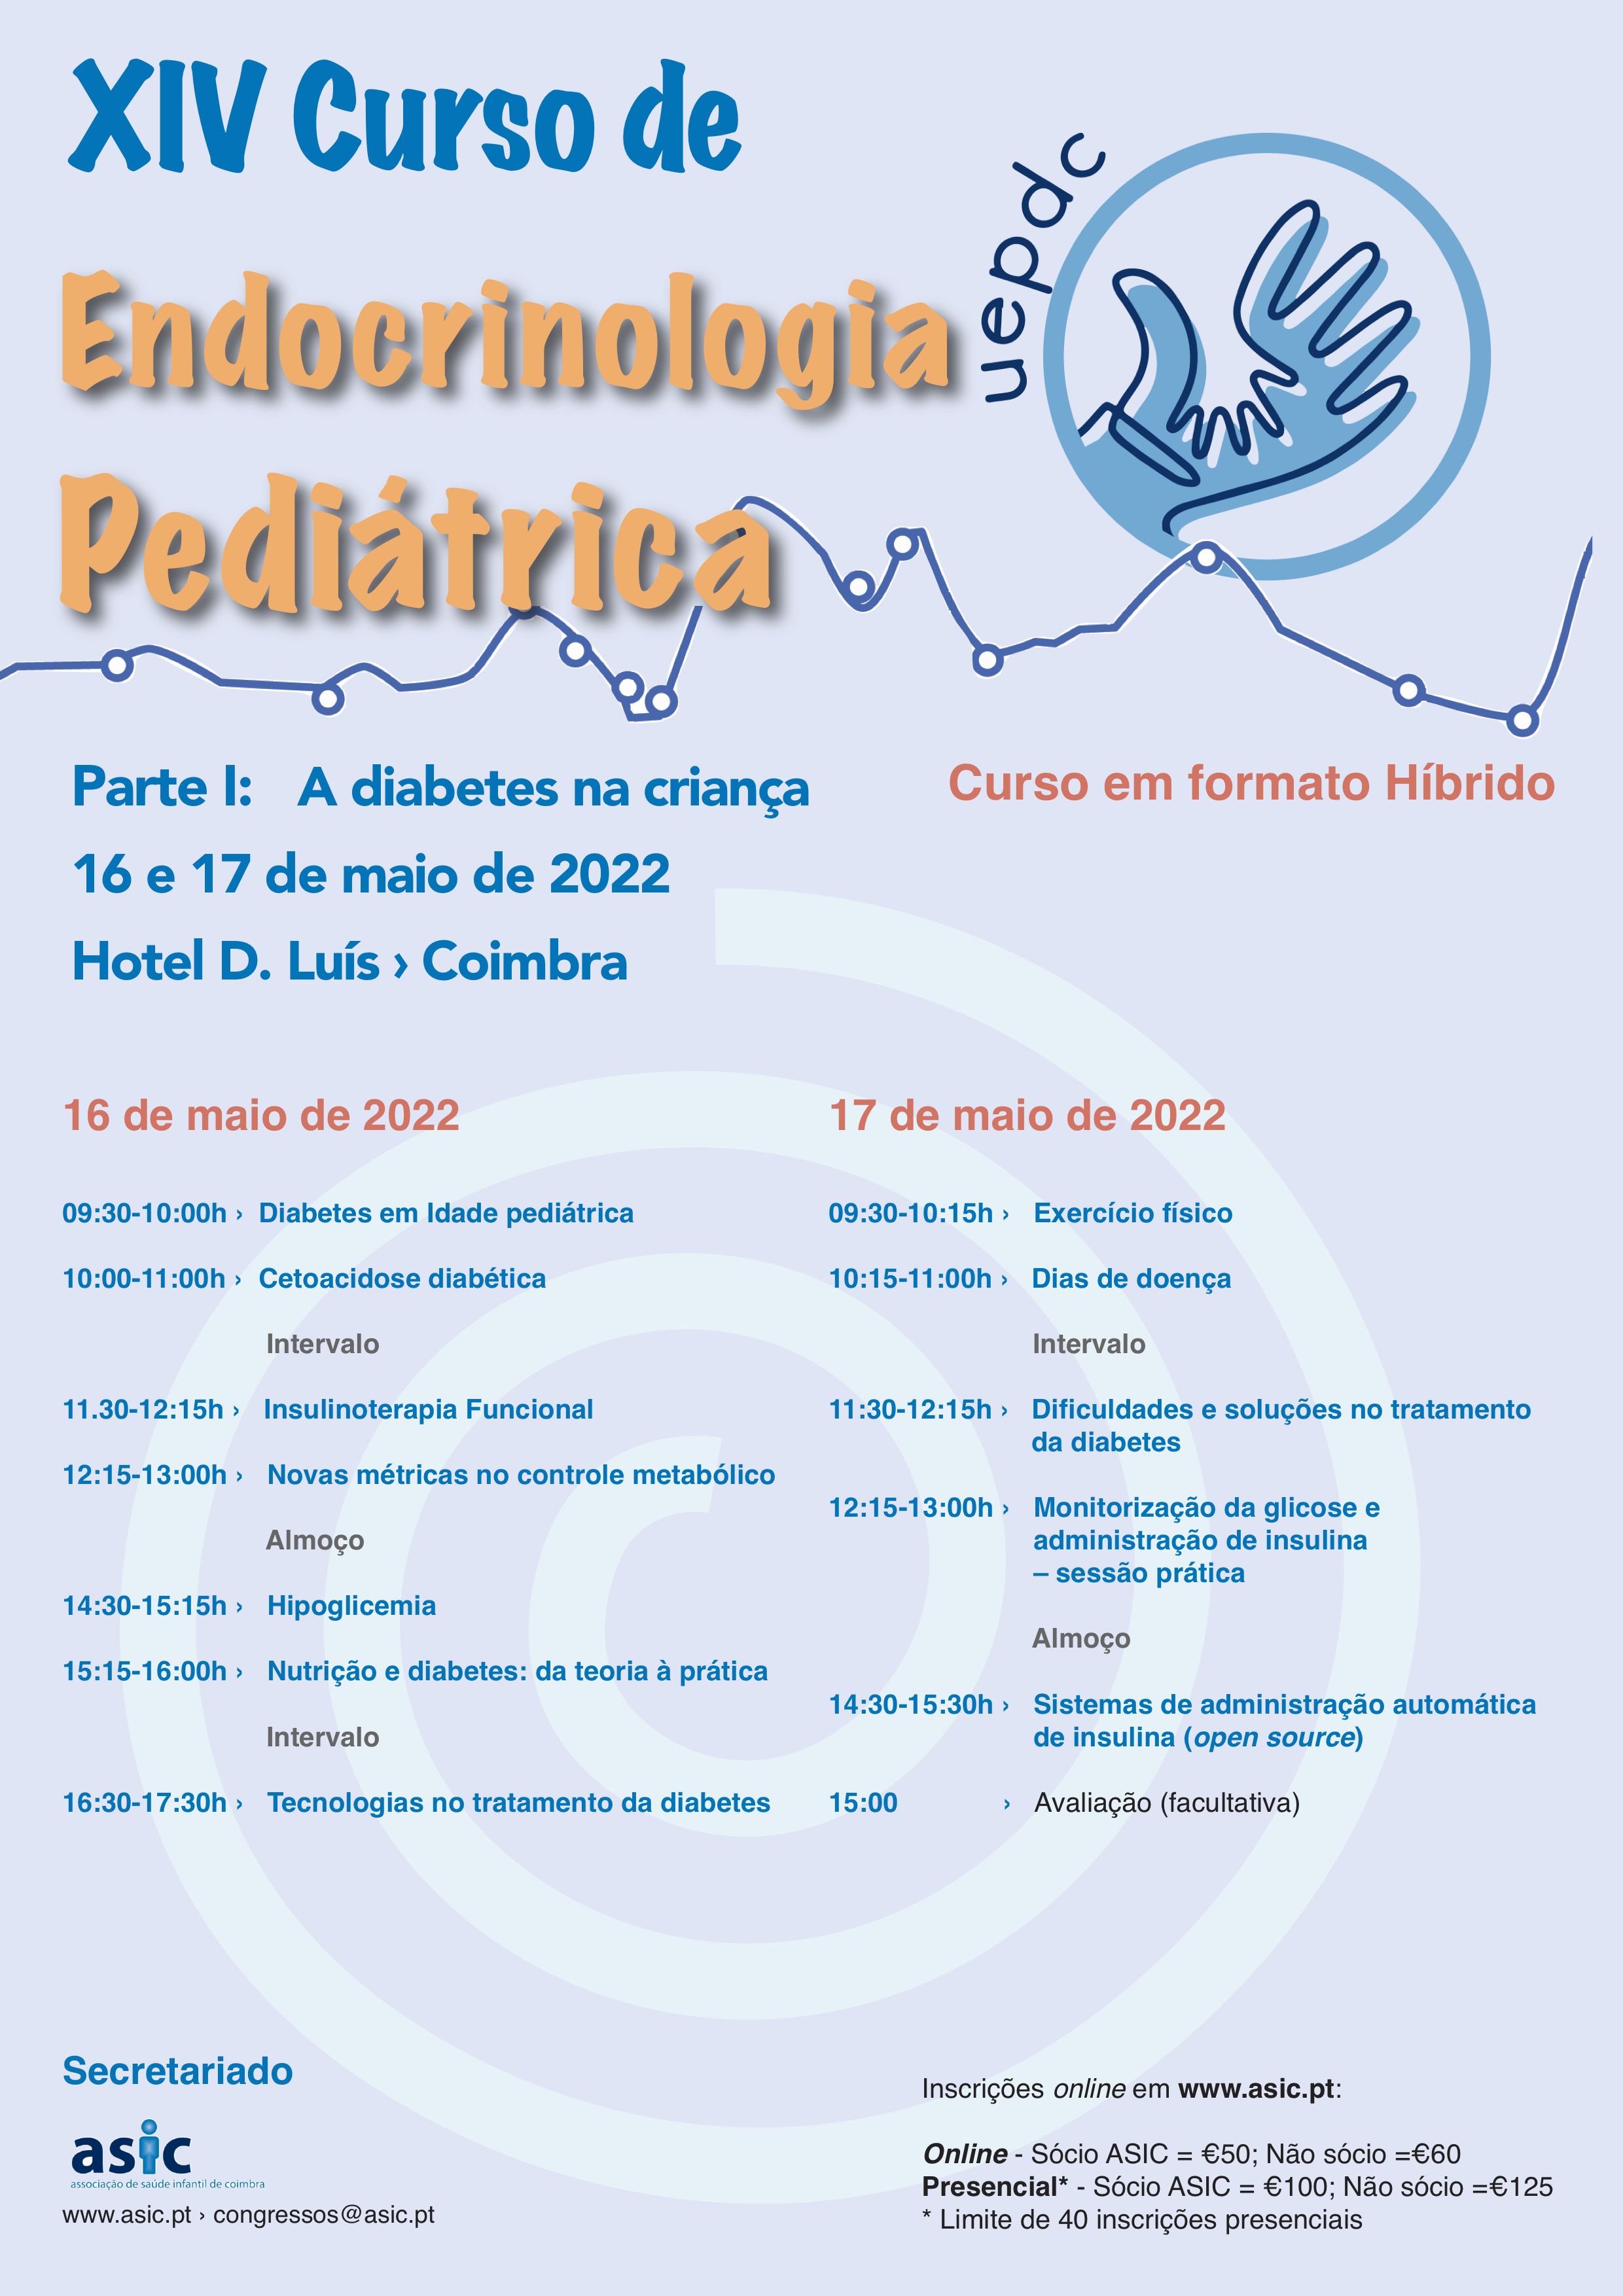 endocrinologia 2022